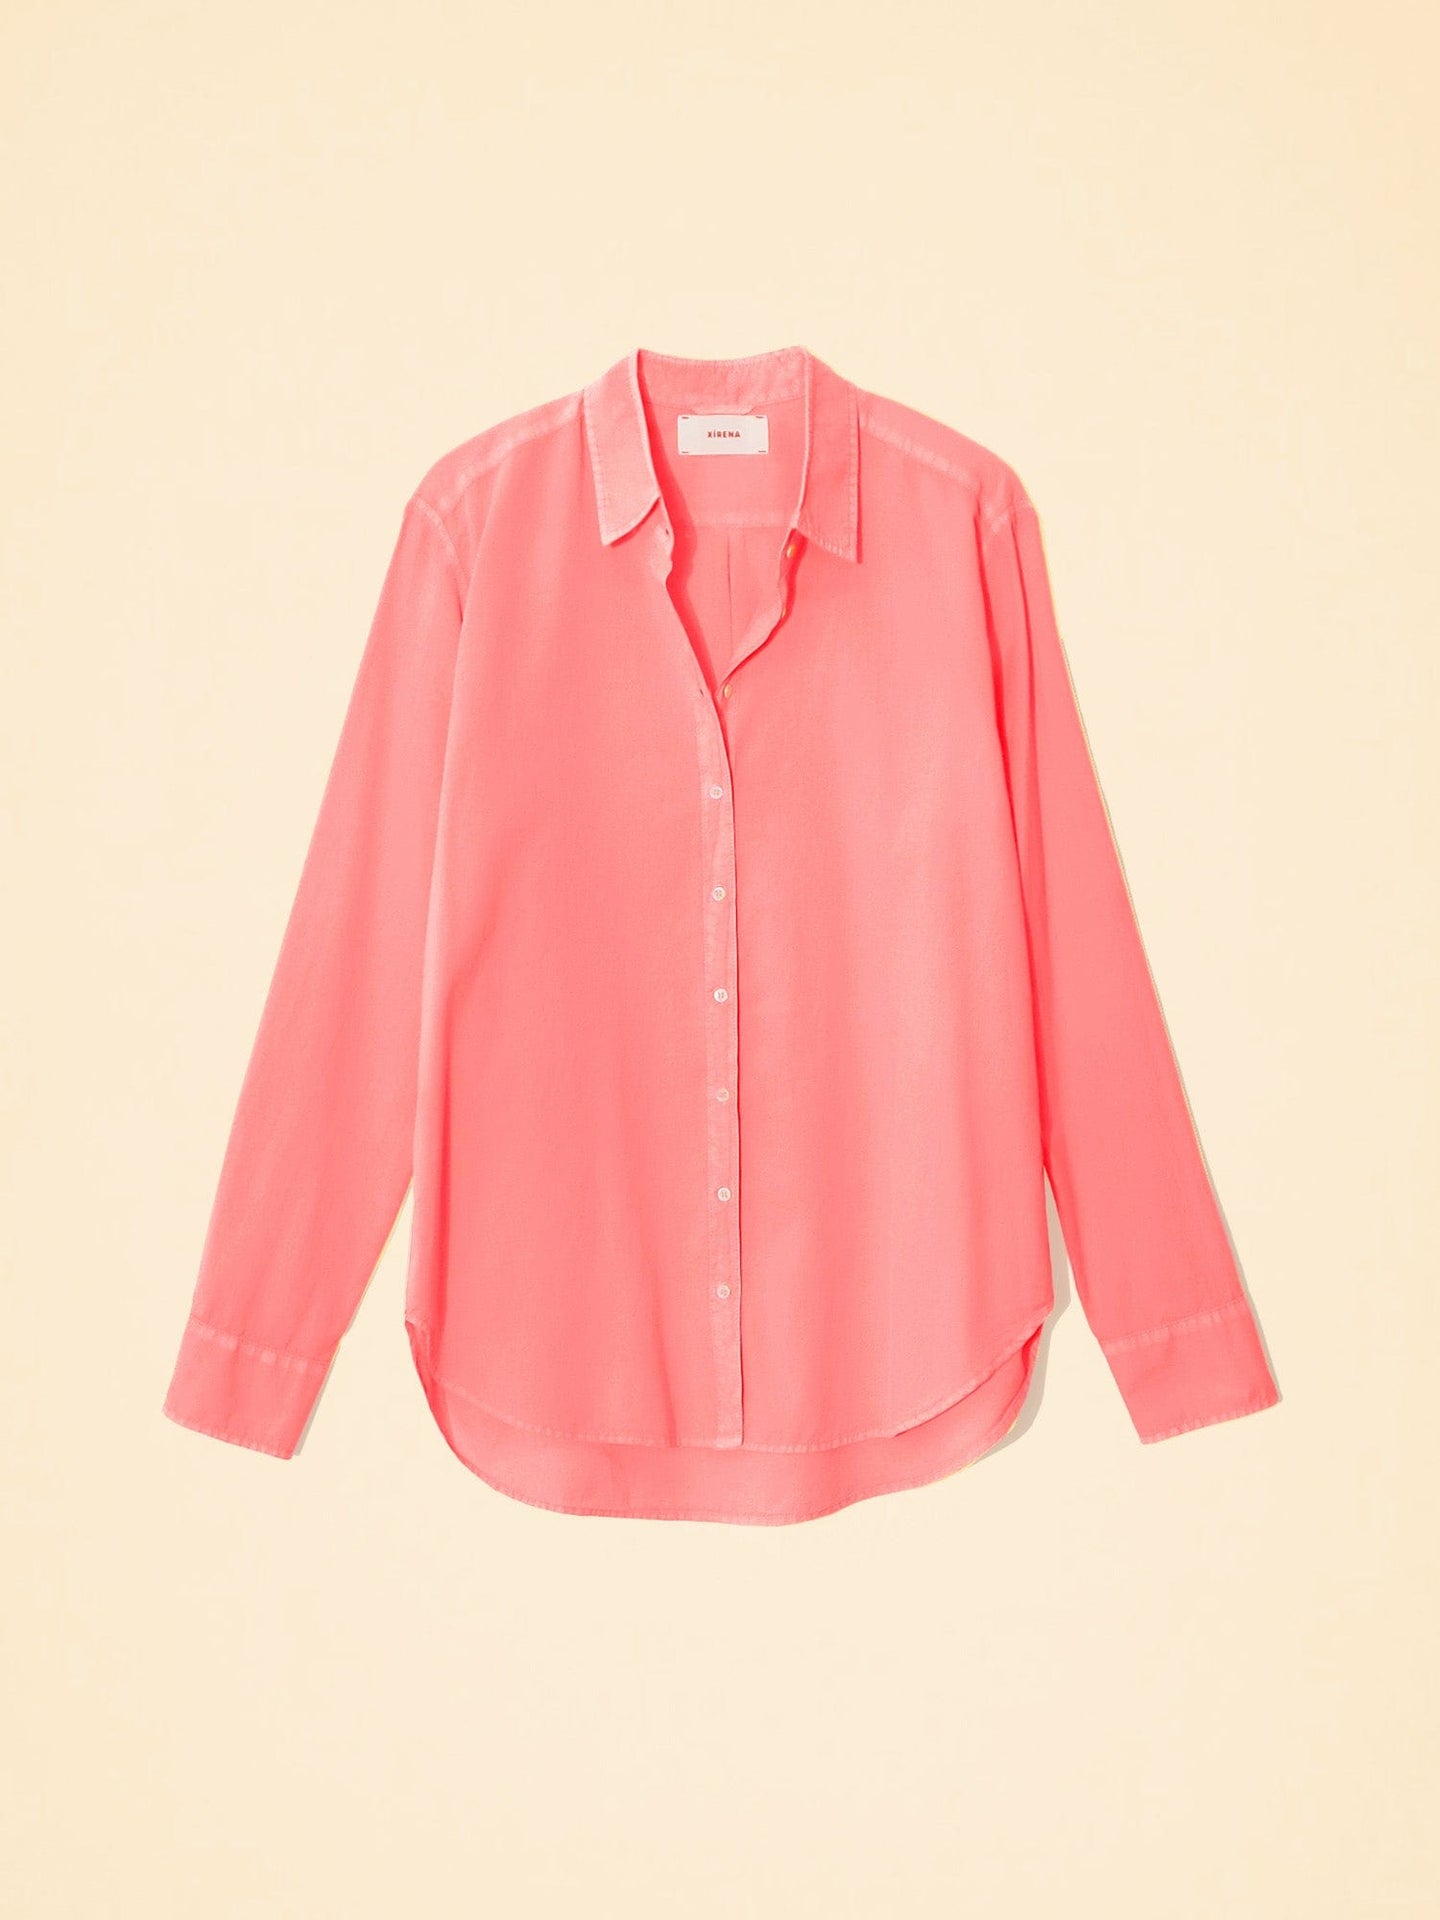 Xirena Shirt Neon Pink Beau Shirt